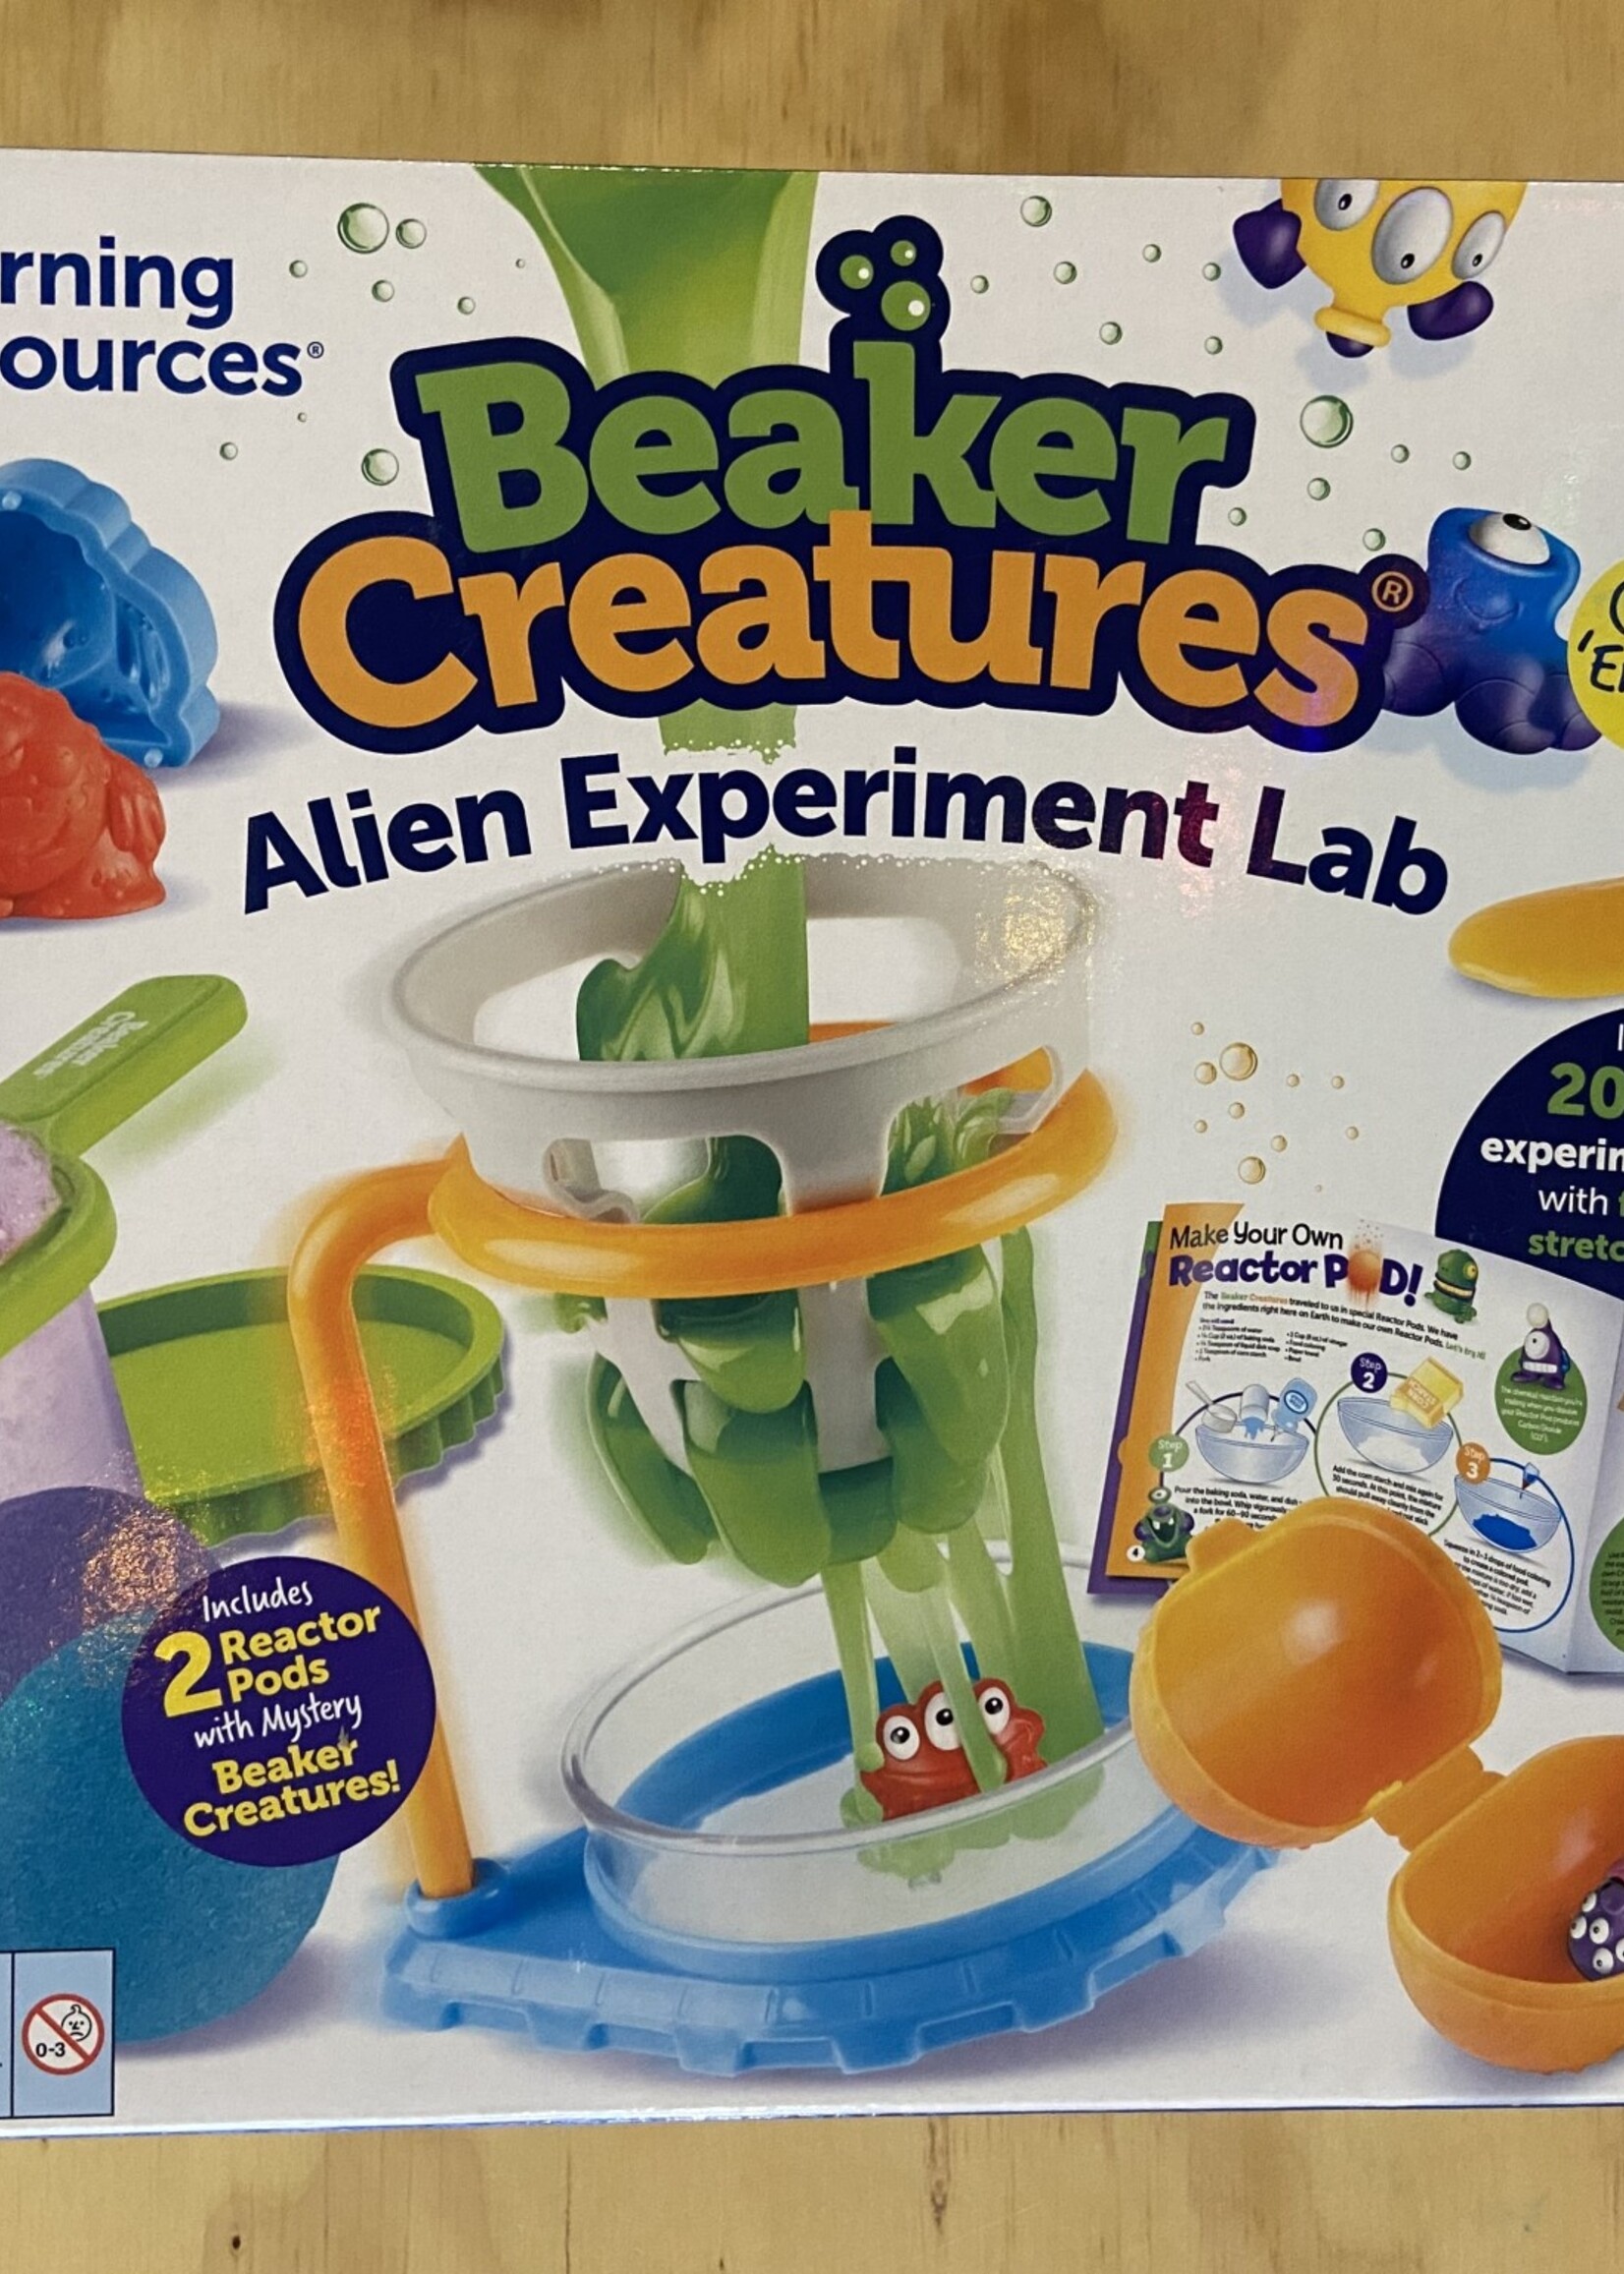 Beaker Creatures Alien Experiment Lab